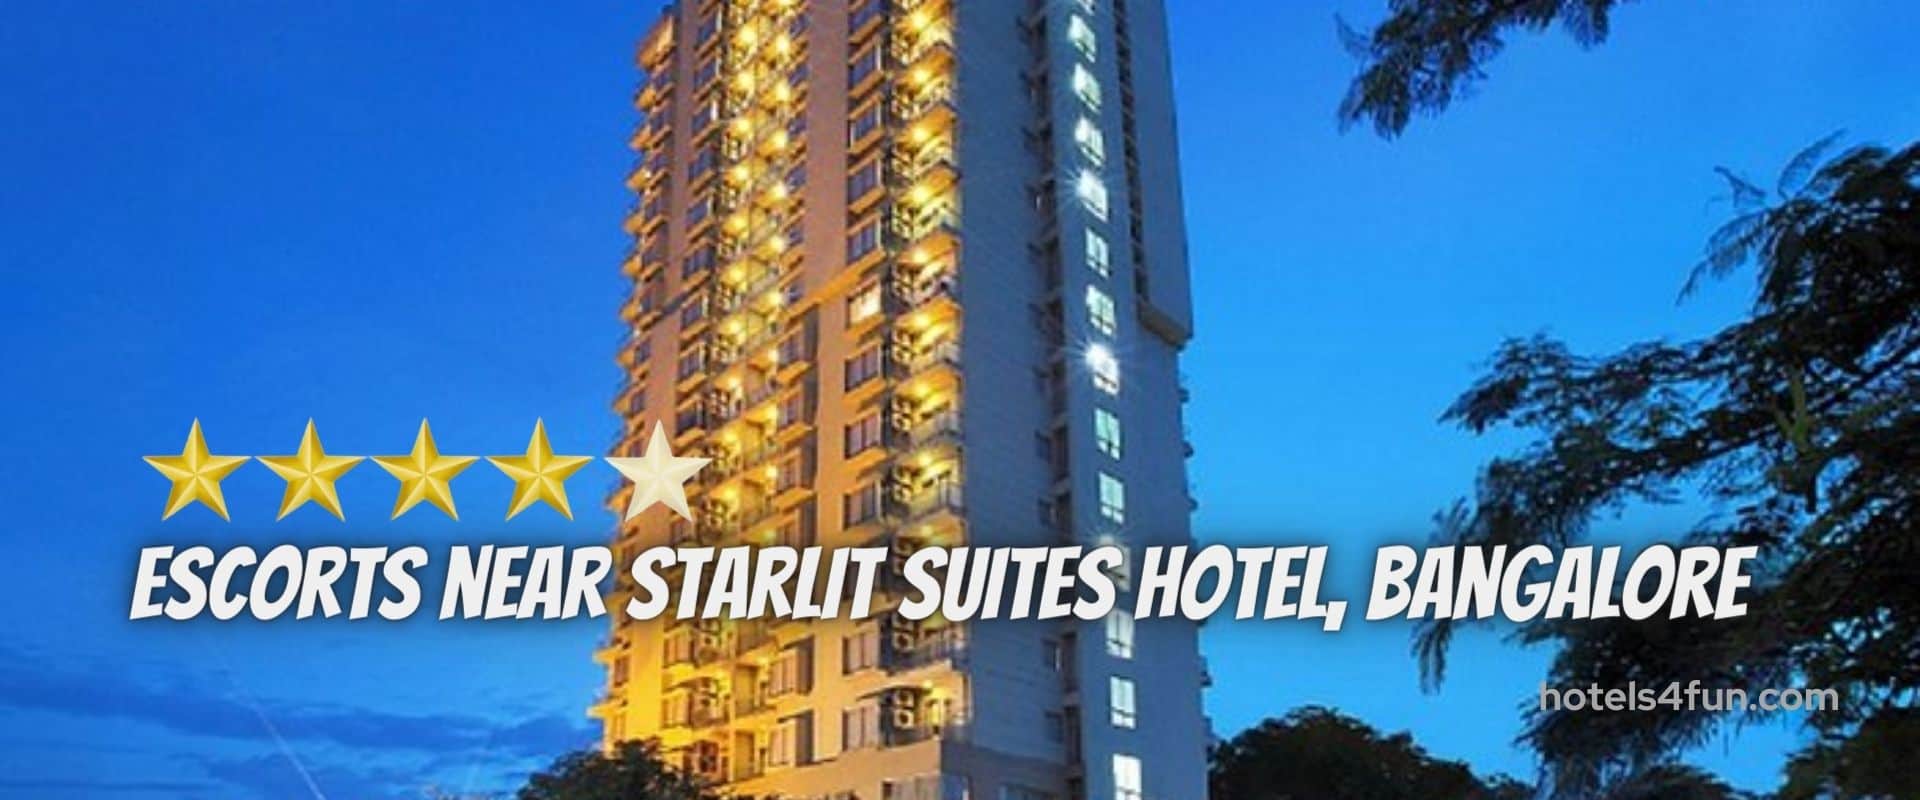 Starlit Suites Hotel Bangalore